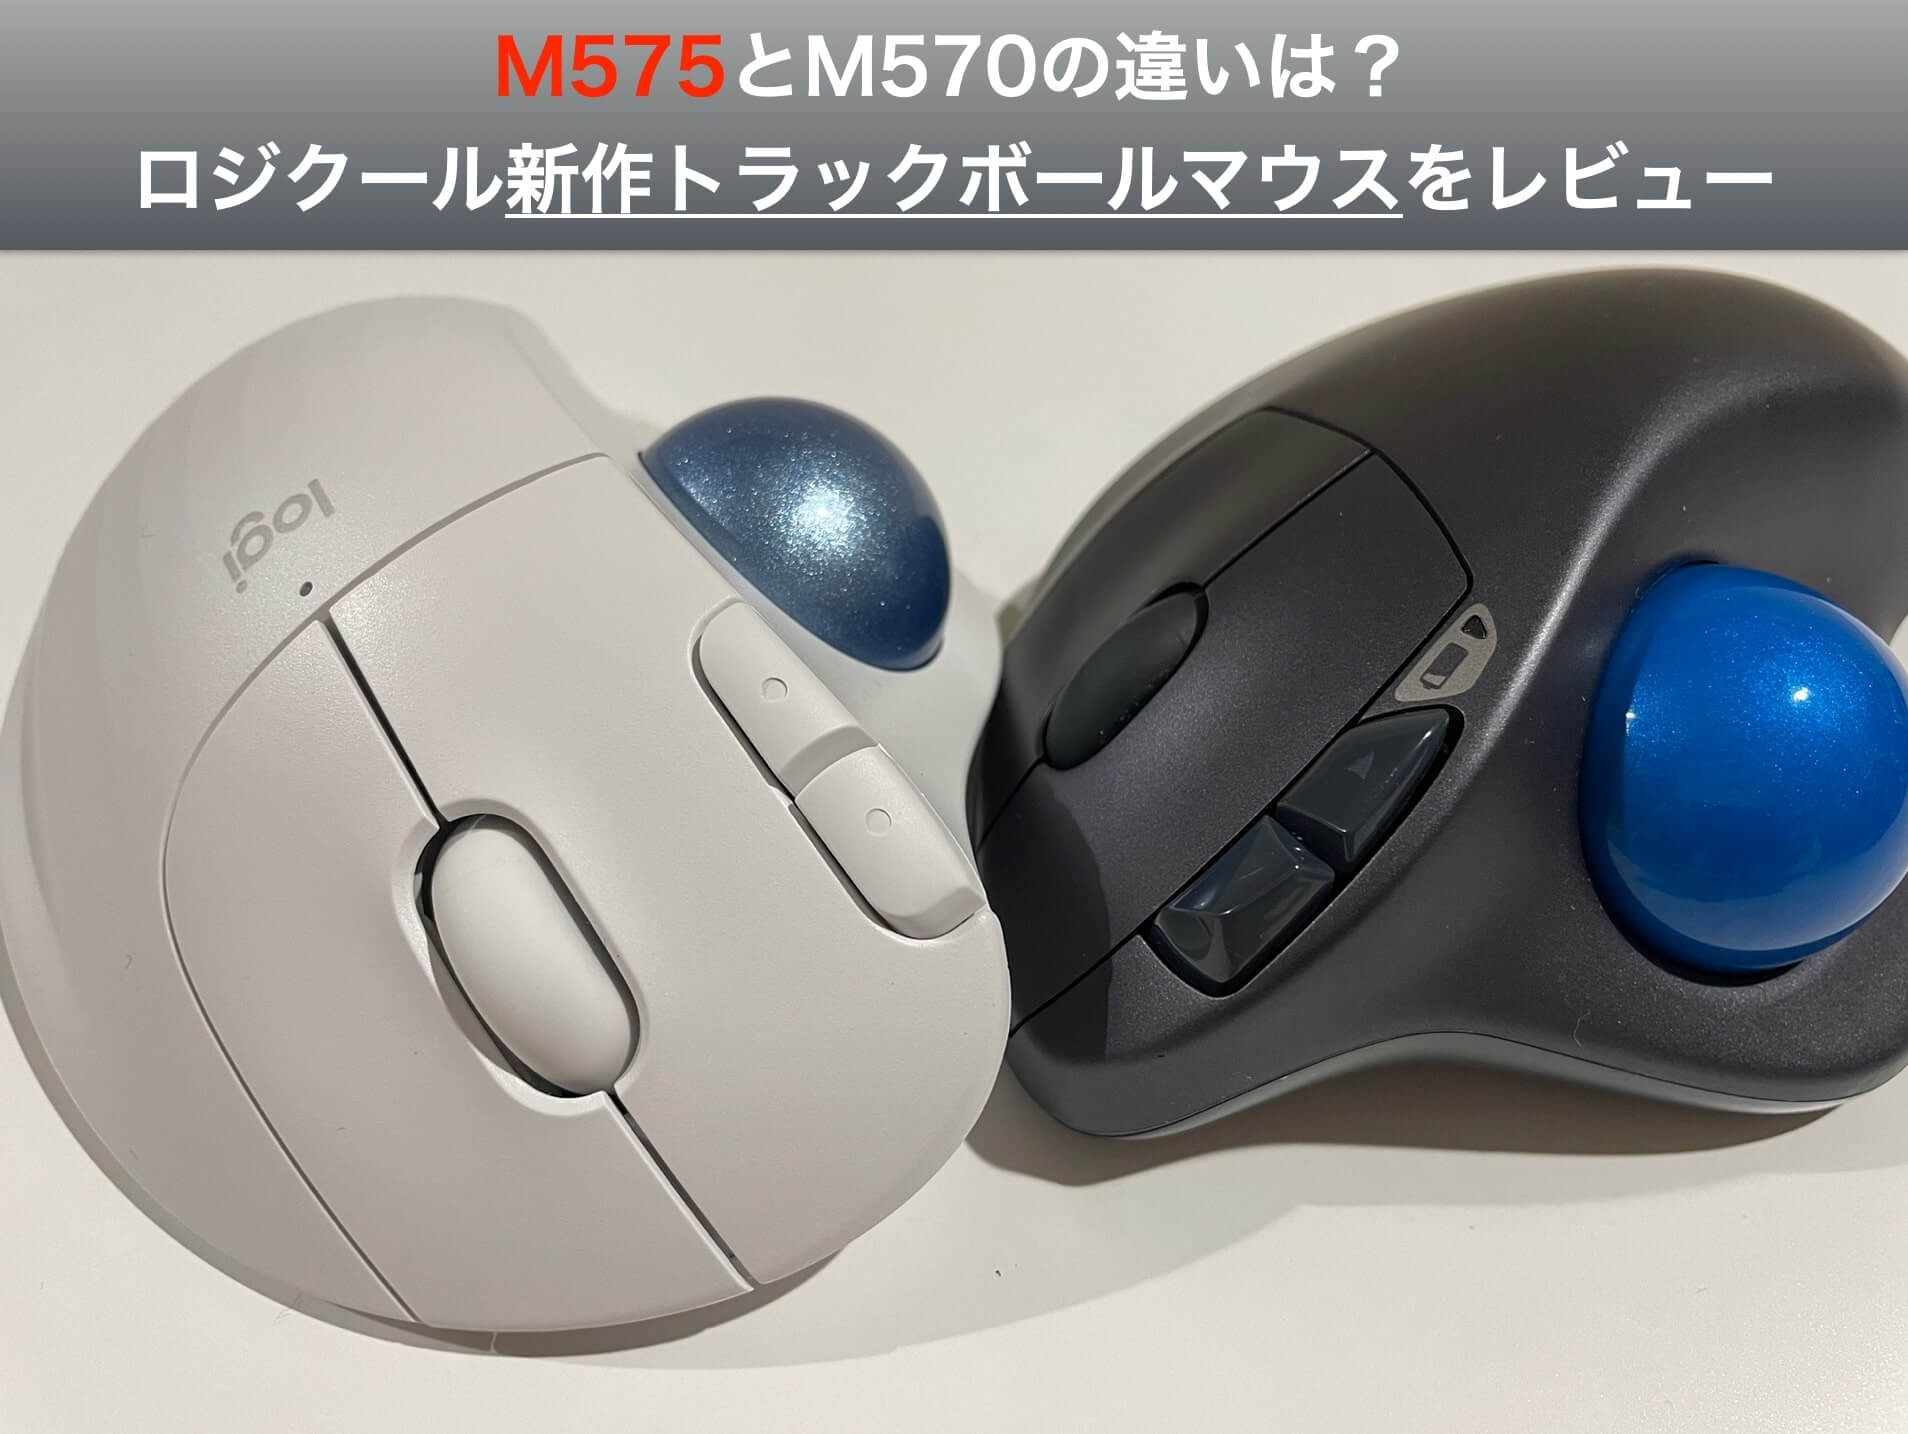 M575とm570の違いは ロジクール新作トラックボールマウスをレビュー 吉之助 Blog